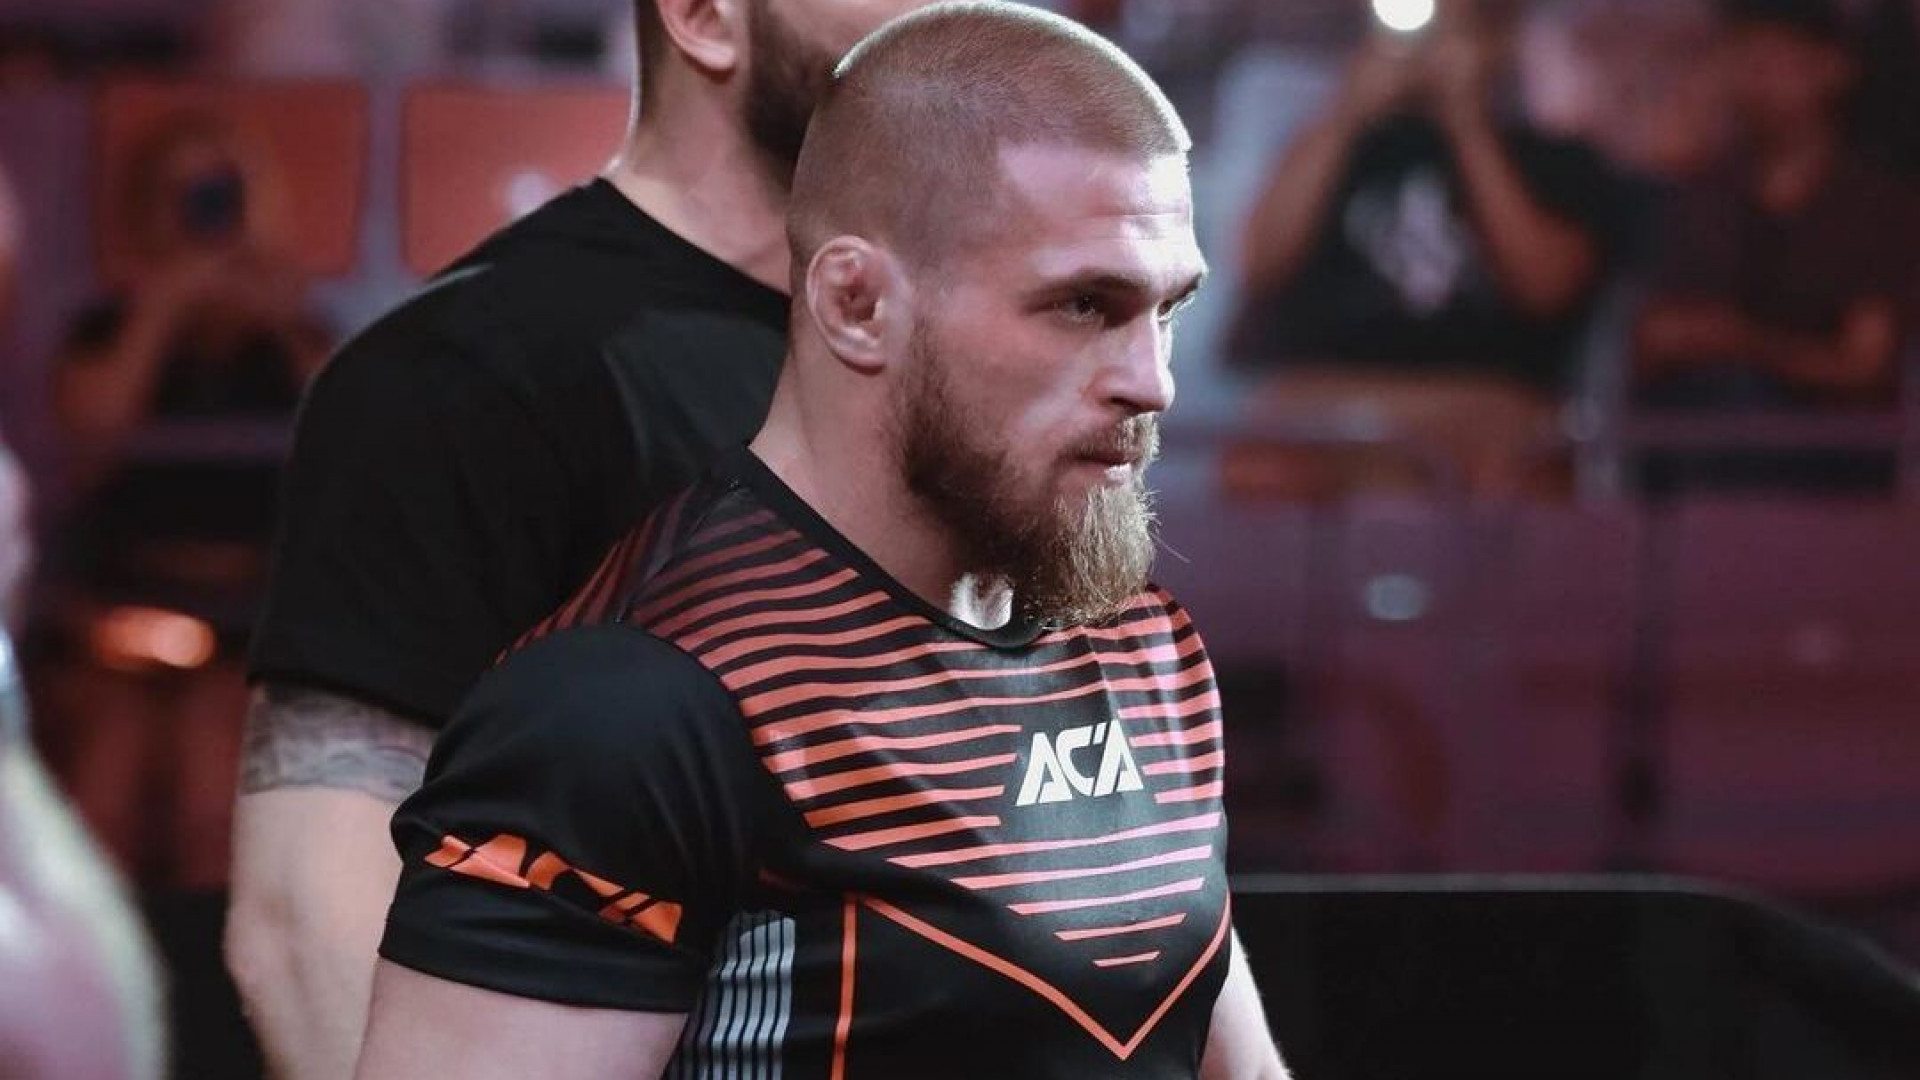 Артем Резников стал лучшим иностранным бойцом в российском промоушене по версии Meta MMA